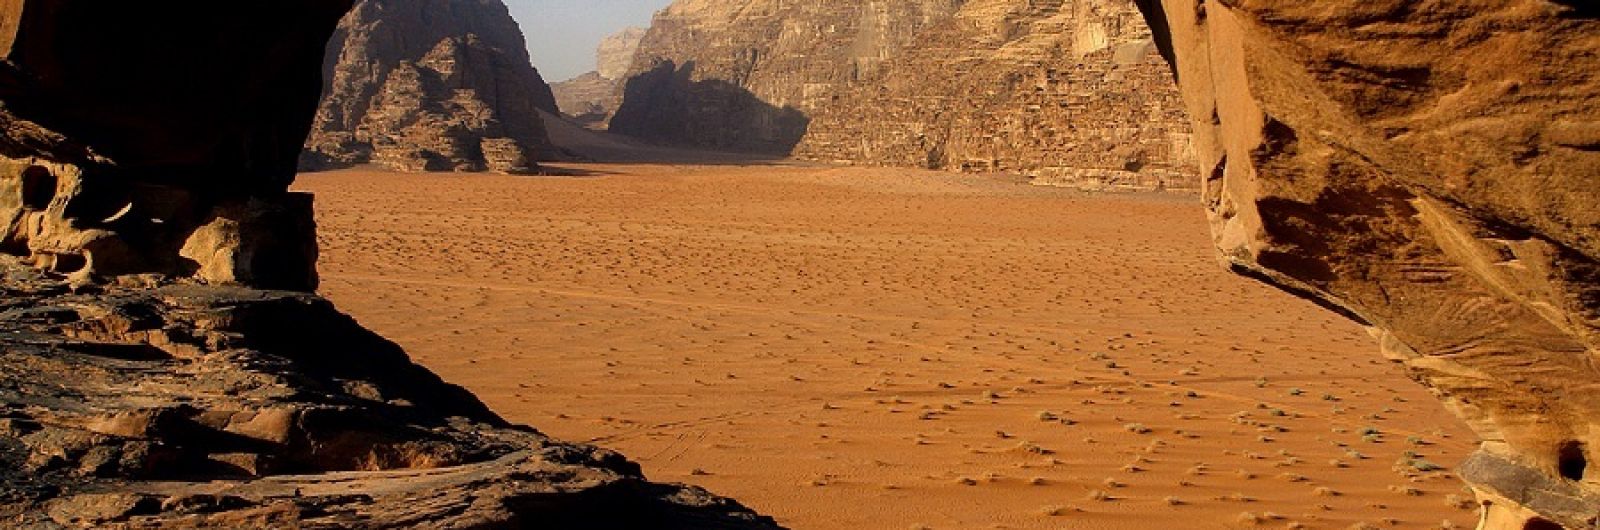 jordania desierto wadi